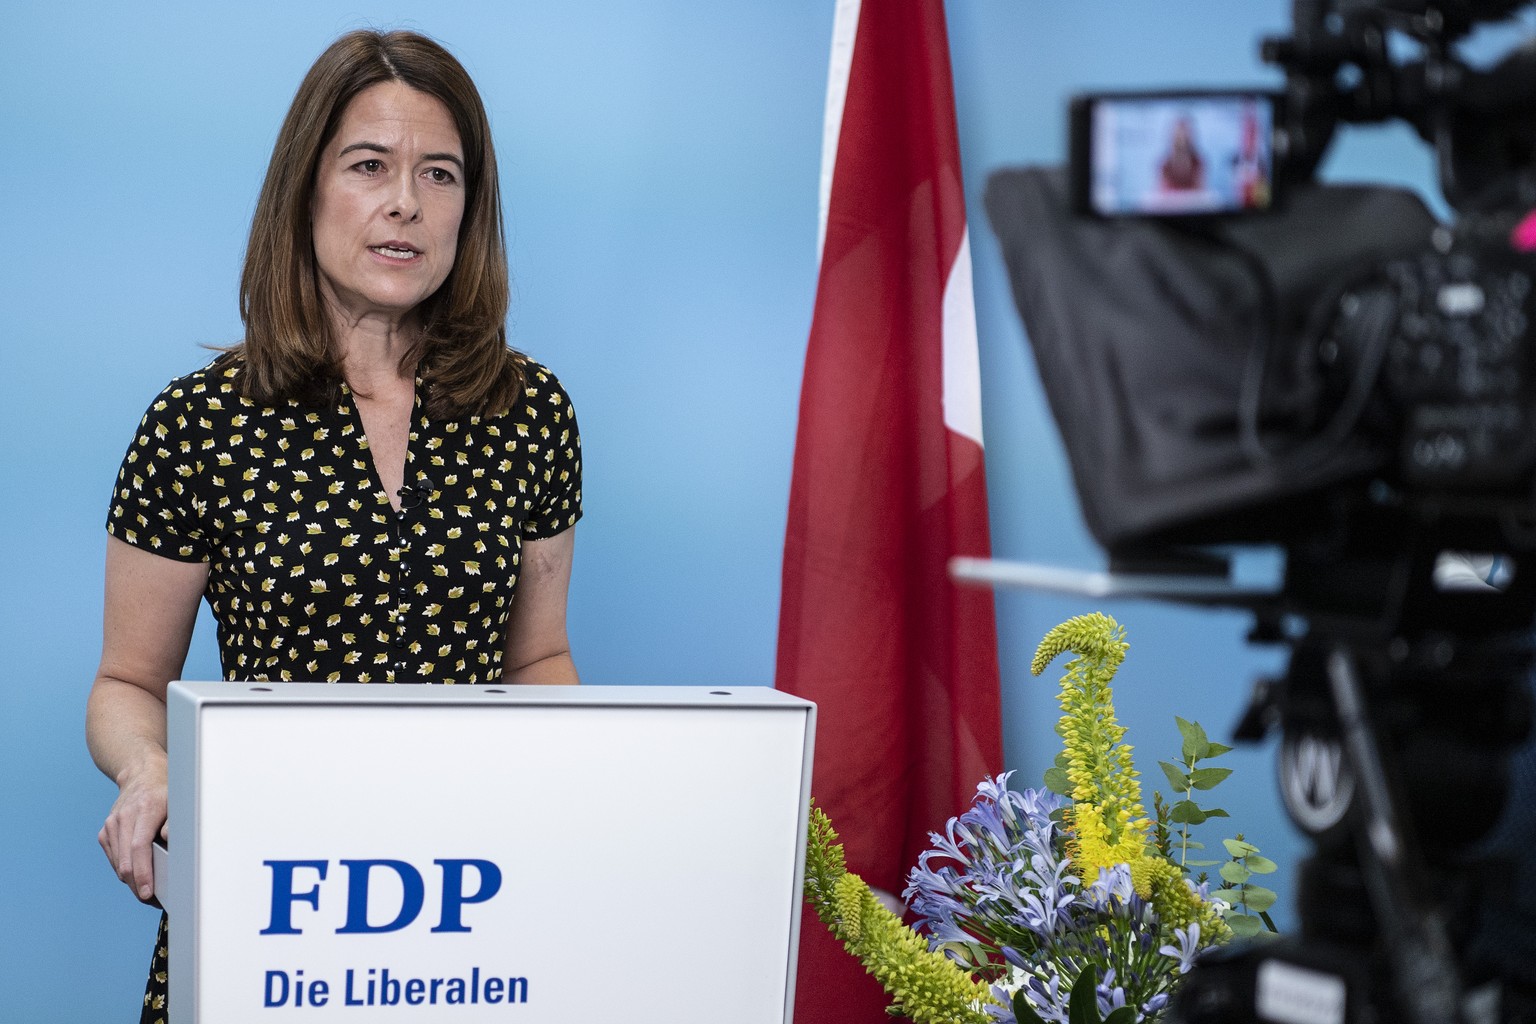 Petra Goessi, Praesidentin der FDP Schweiz, spricht an einer E-Delegiertenversammlung zu den Mitgliedern, am Samstag, 27. Juni 2020, in Bern. (KEYSTONE/Peter Schneider)